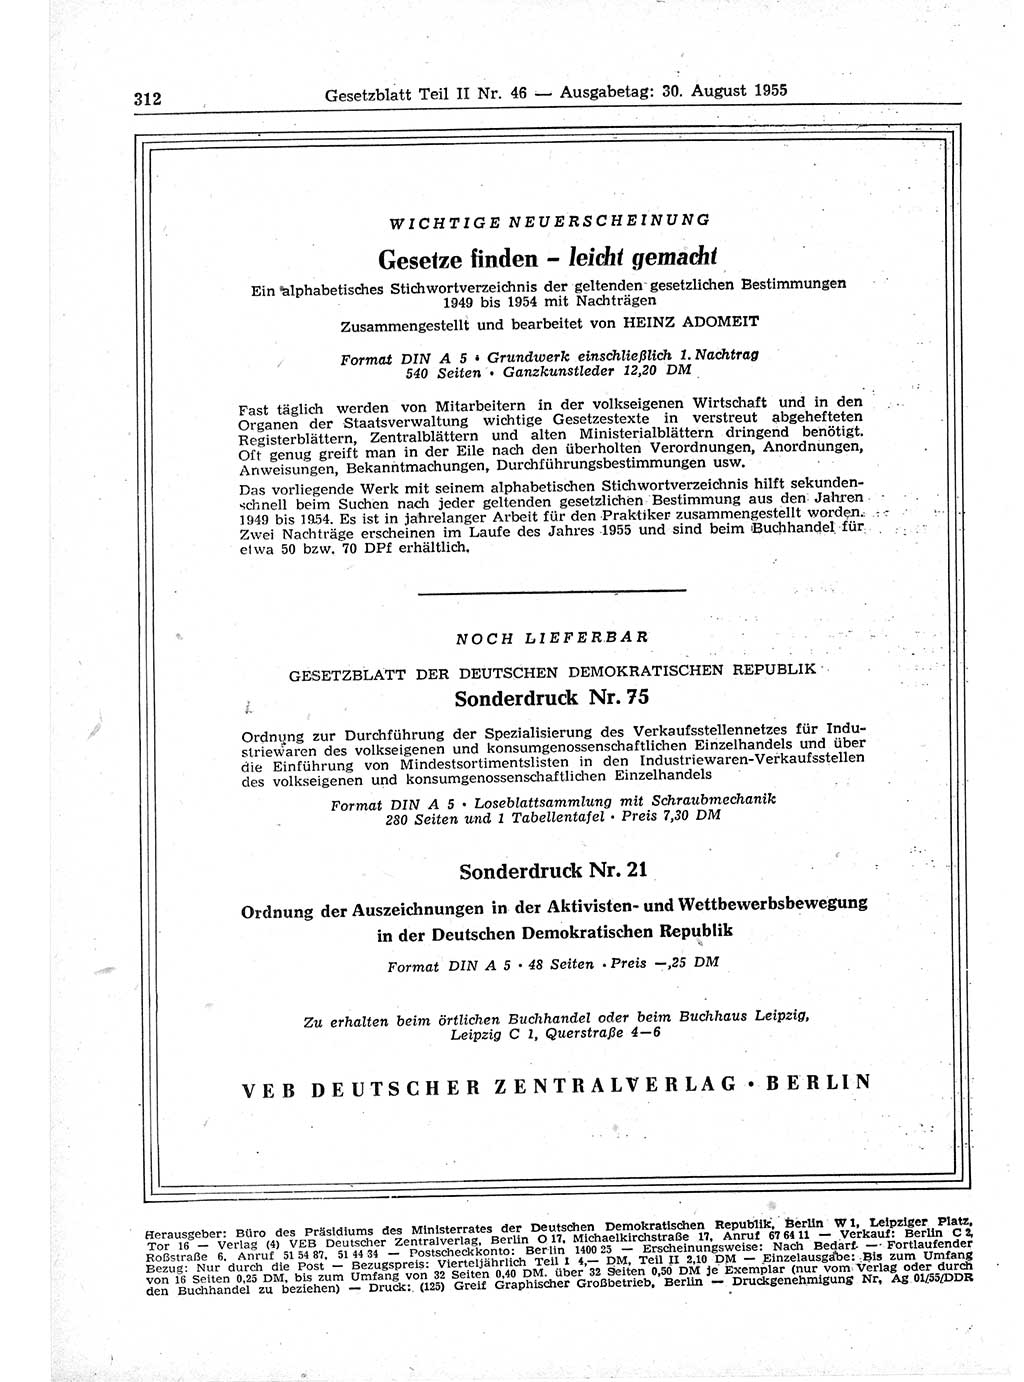 Gesetzblatt (GBl.) der Deutschen Demokratischen Republik (DDR) Teil ⅠⅠ 1955, Seite 312 (GBl. DDR ⅠⅠ 1955, S. 312)